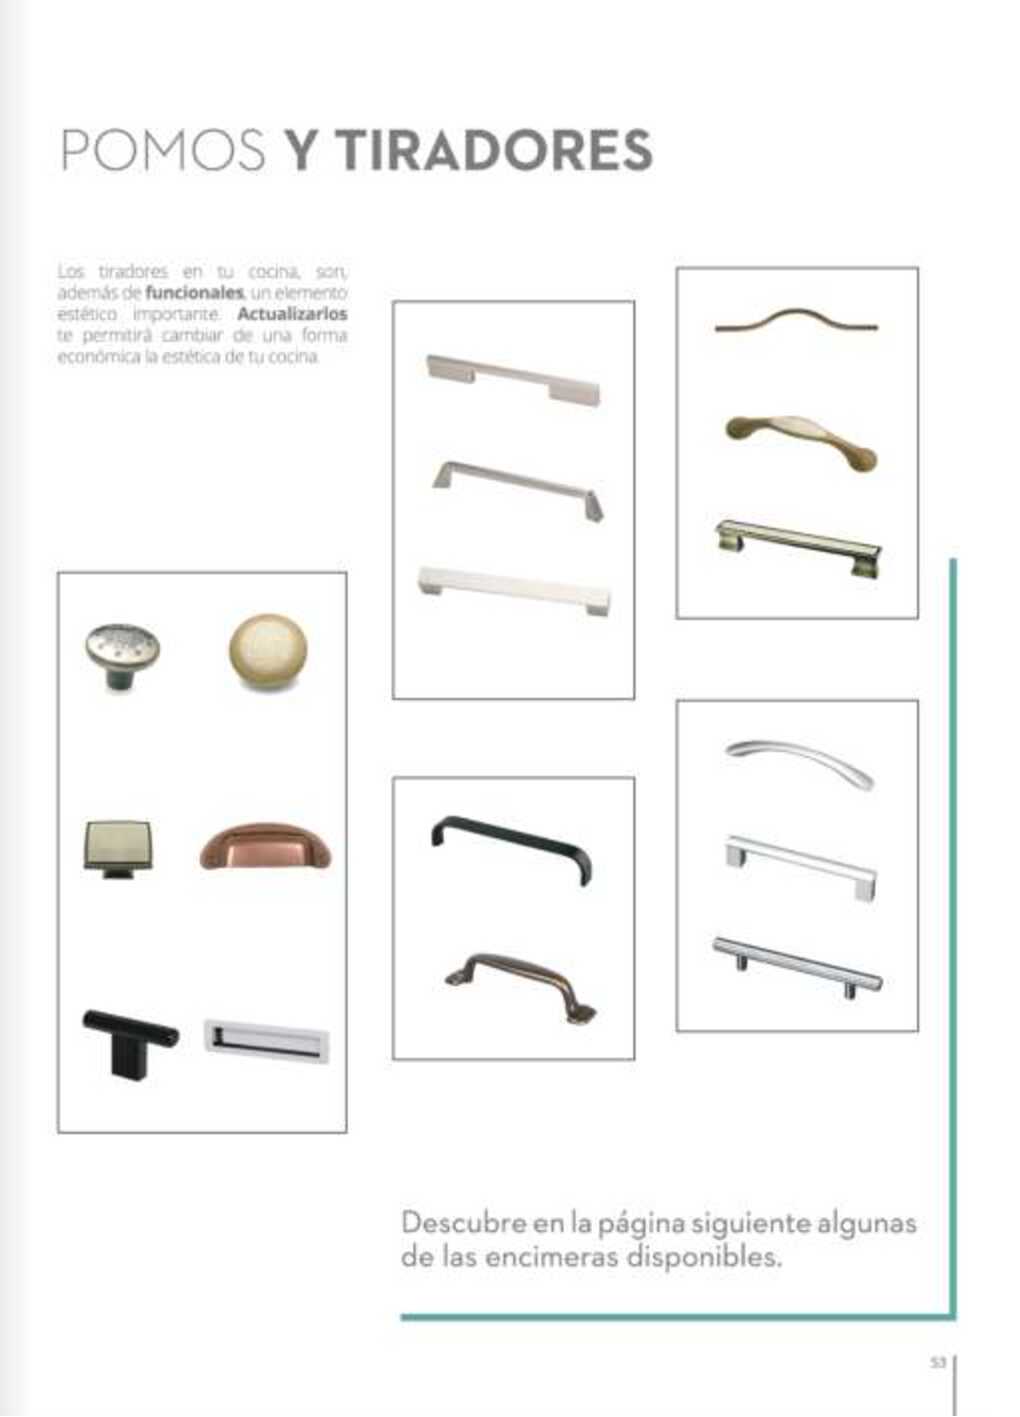 Catálogo cocinas Conforama. Página 53